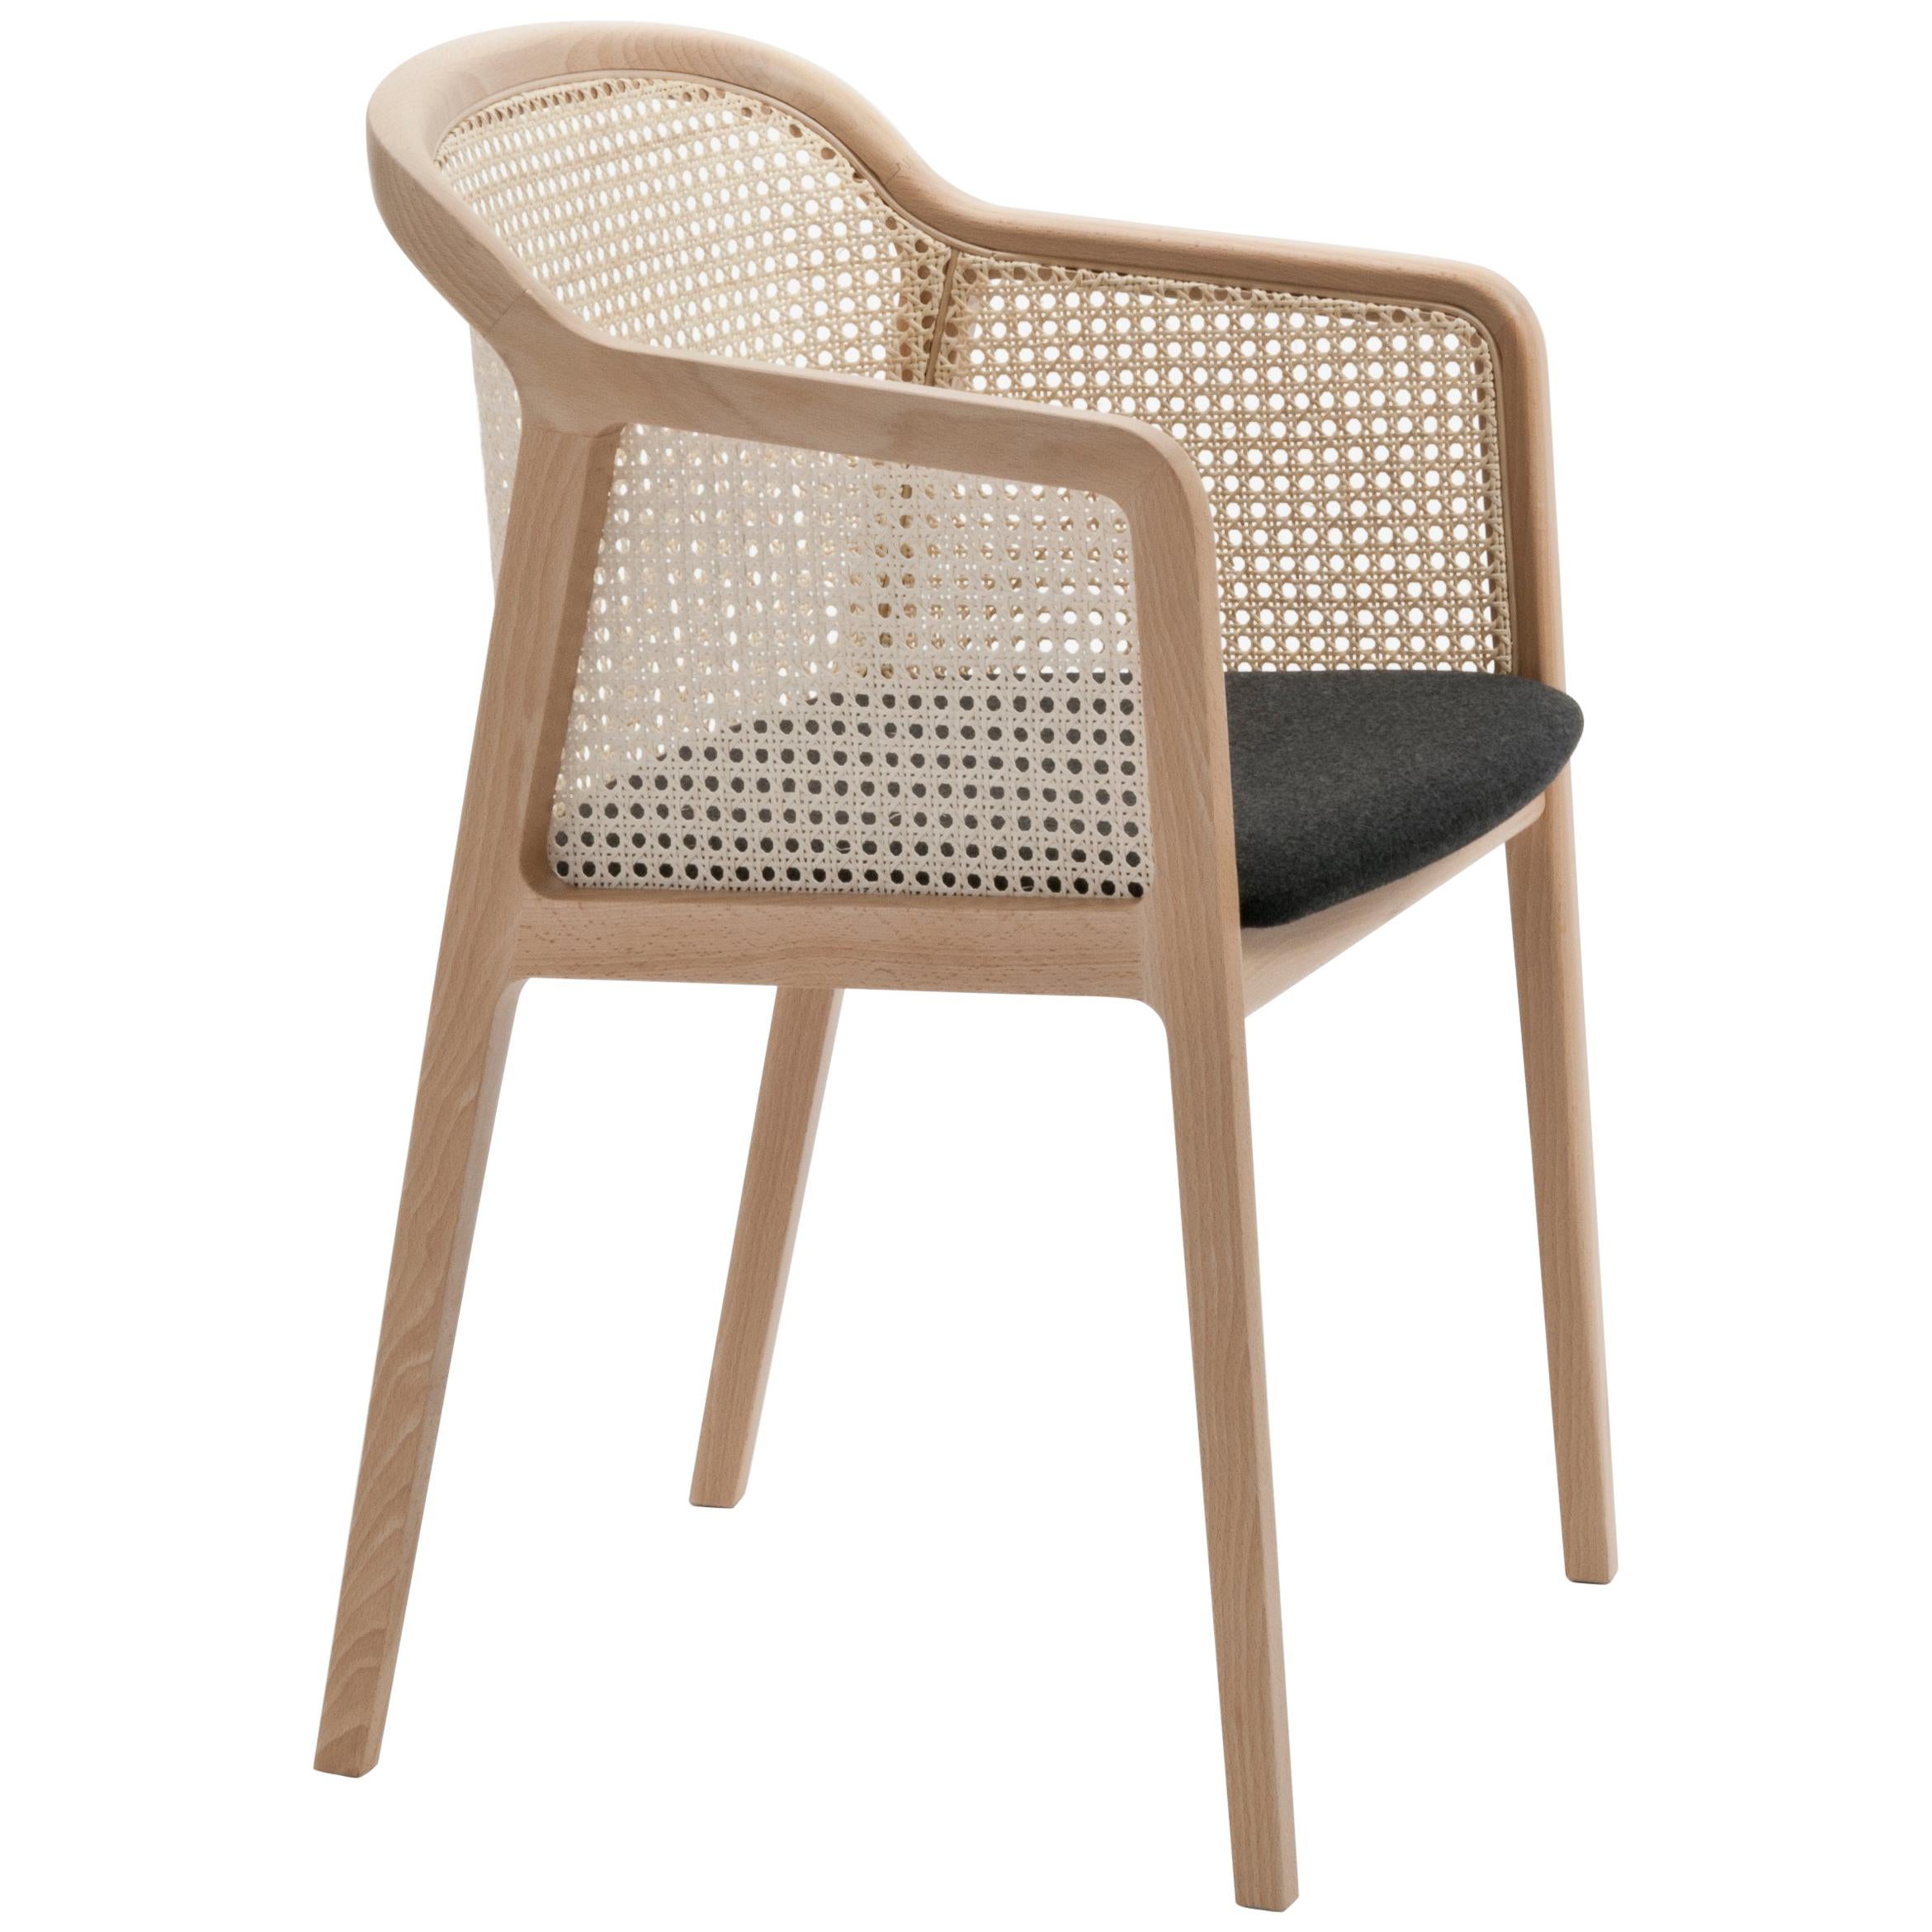 Fauteuil Vienna, design moderne en bois et paille, assise tapissée de feutre noir en vente